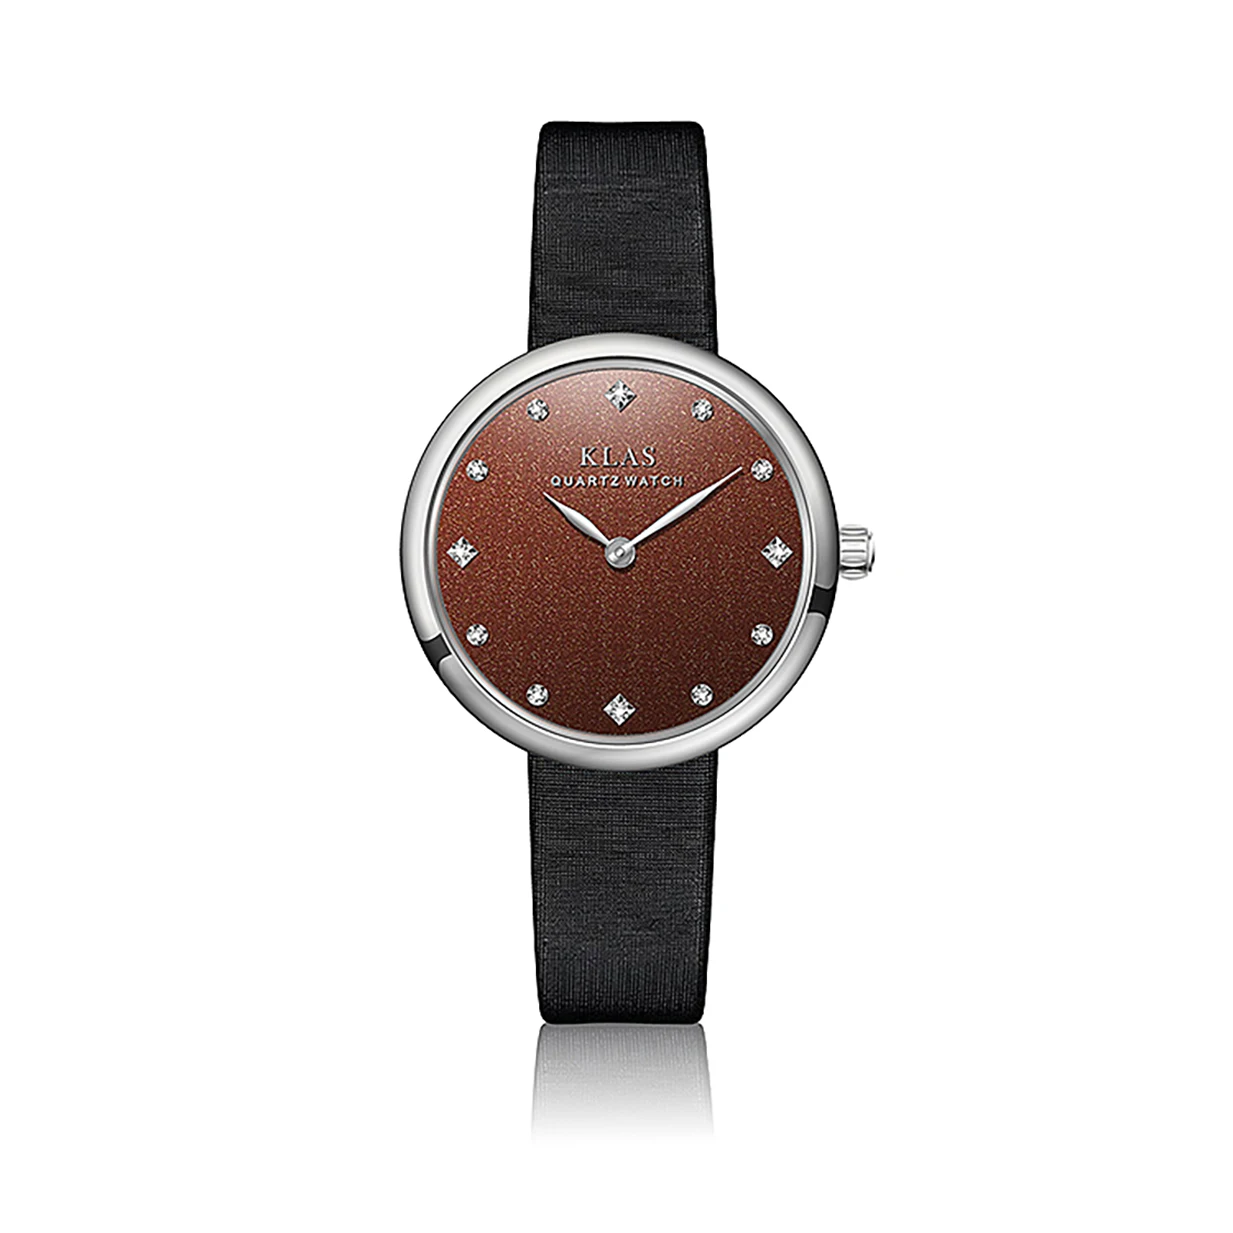 Regalos Para Novia New waterproof Leather Belt  Women's Watch Birthday Gifts KLAS Brand enlarge